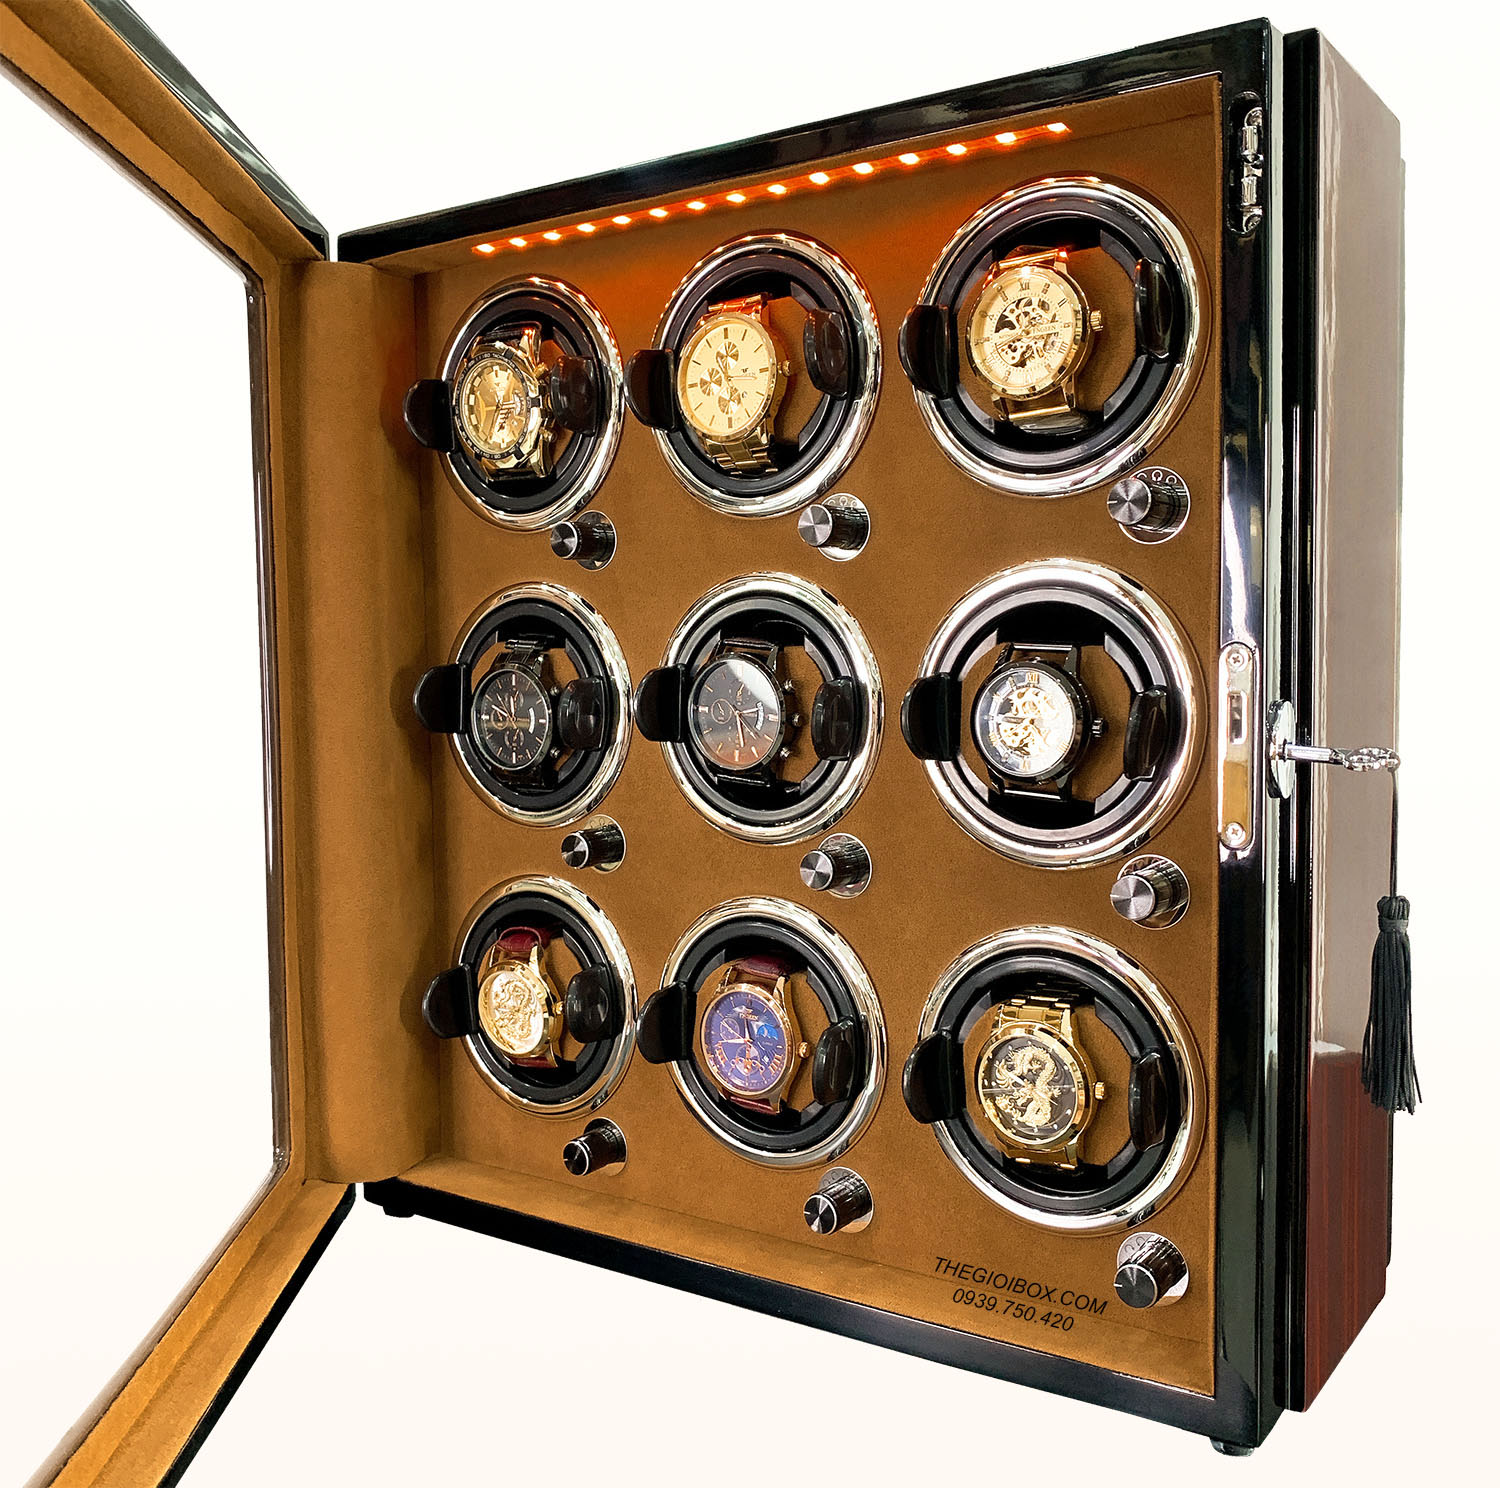 Tủ xoay đồng hồ cơ ACBOW 9 ngăn nội thất nỉ nhung nâu - vỏ gỗ - đèn LED - khóa an toàn